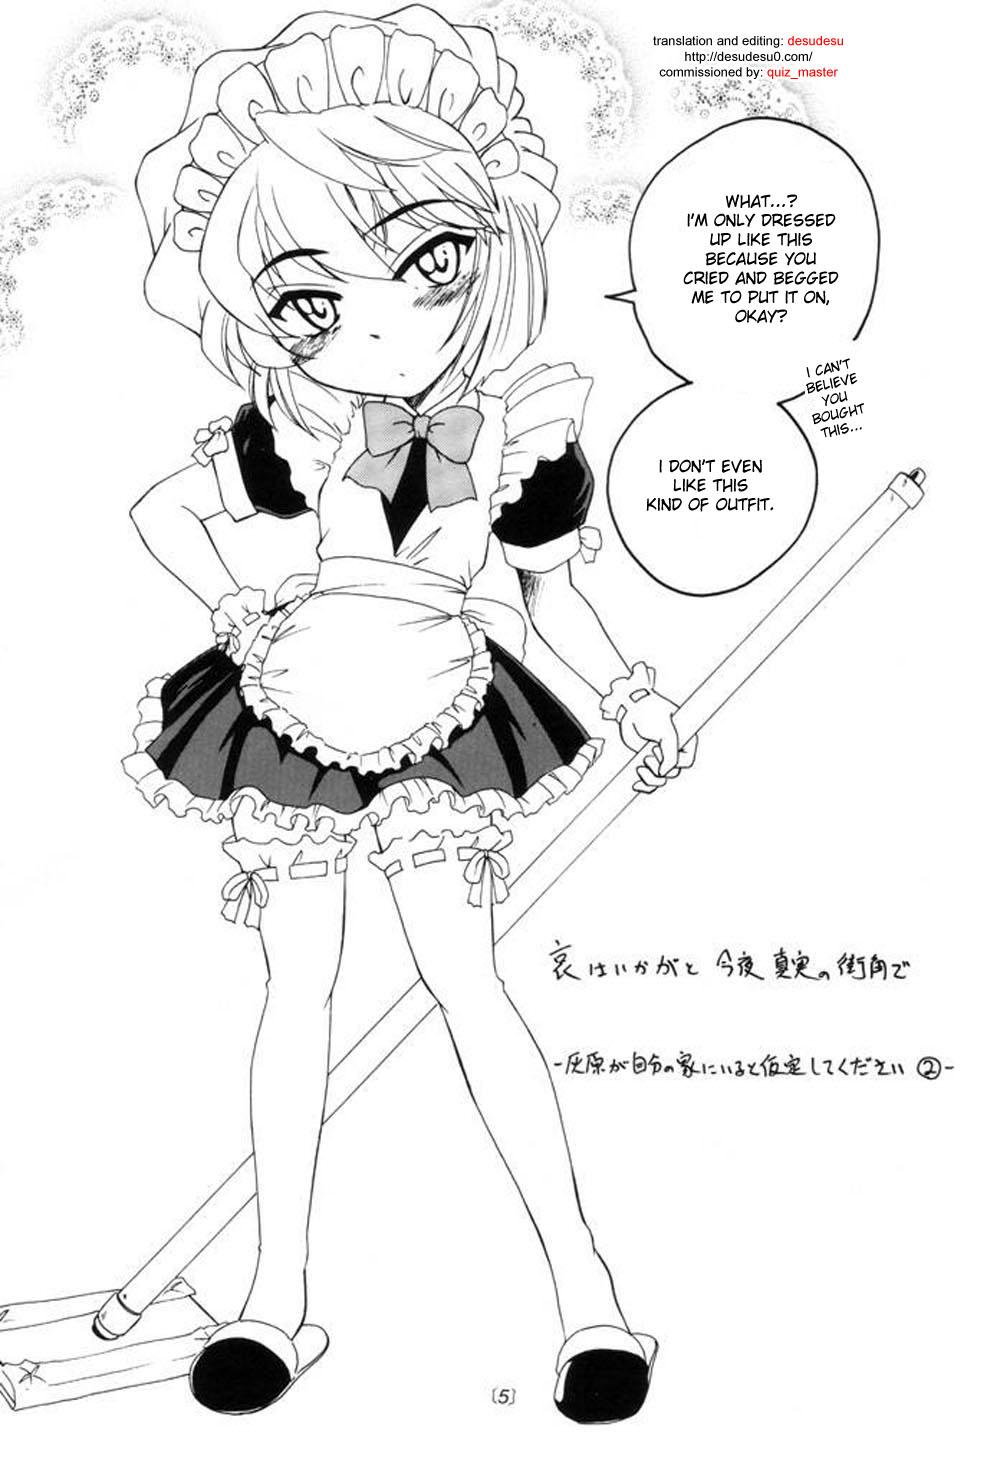 Escort Manga Sangyou Haikibutsu 04 - Detective conan Retro - Page 4